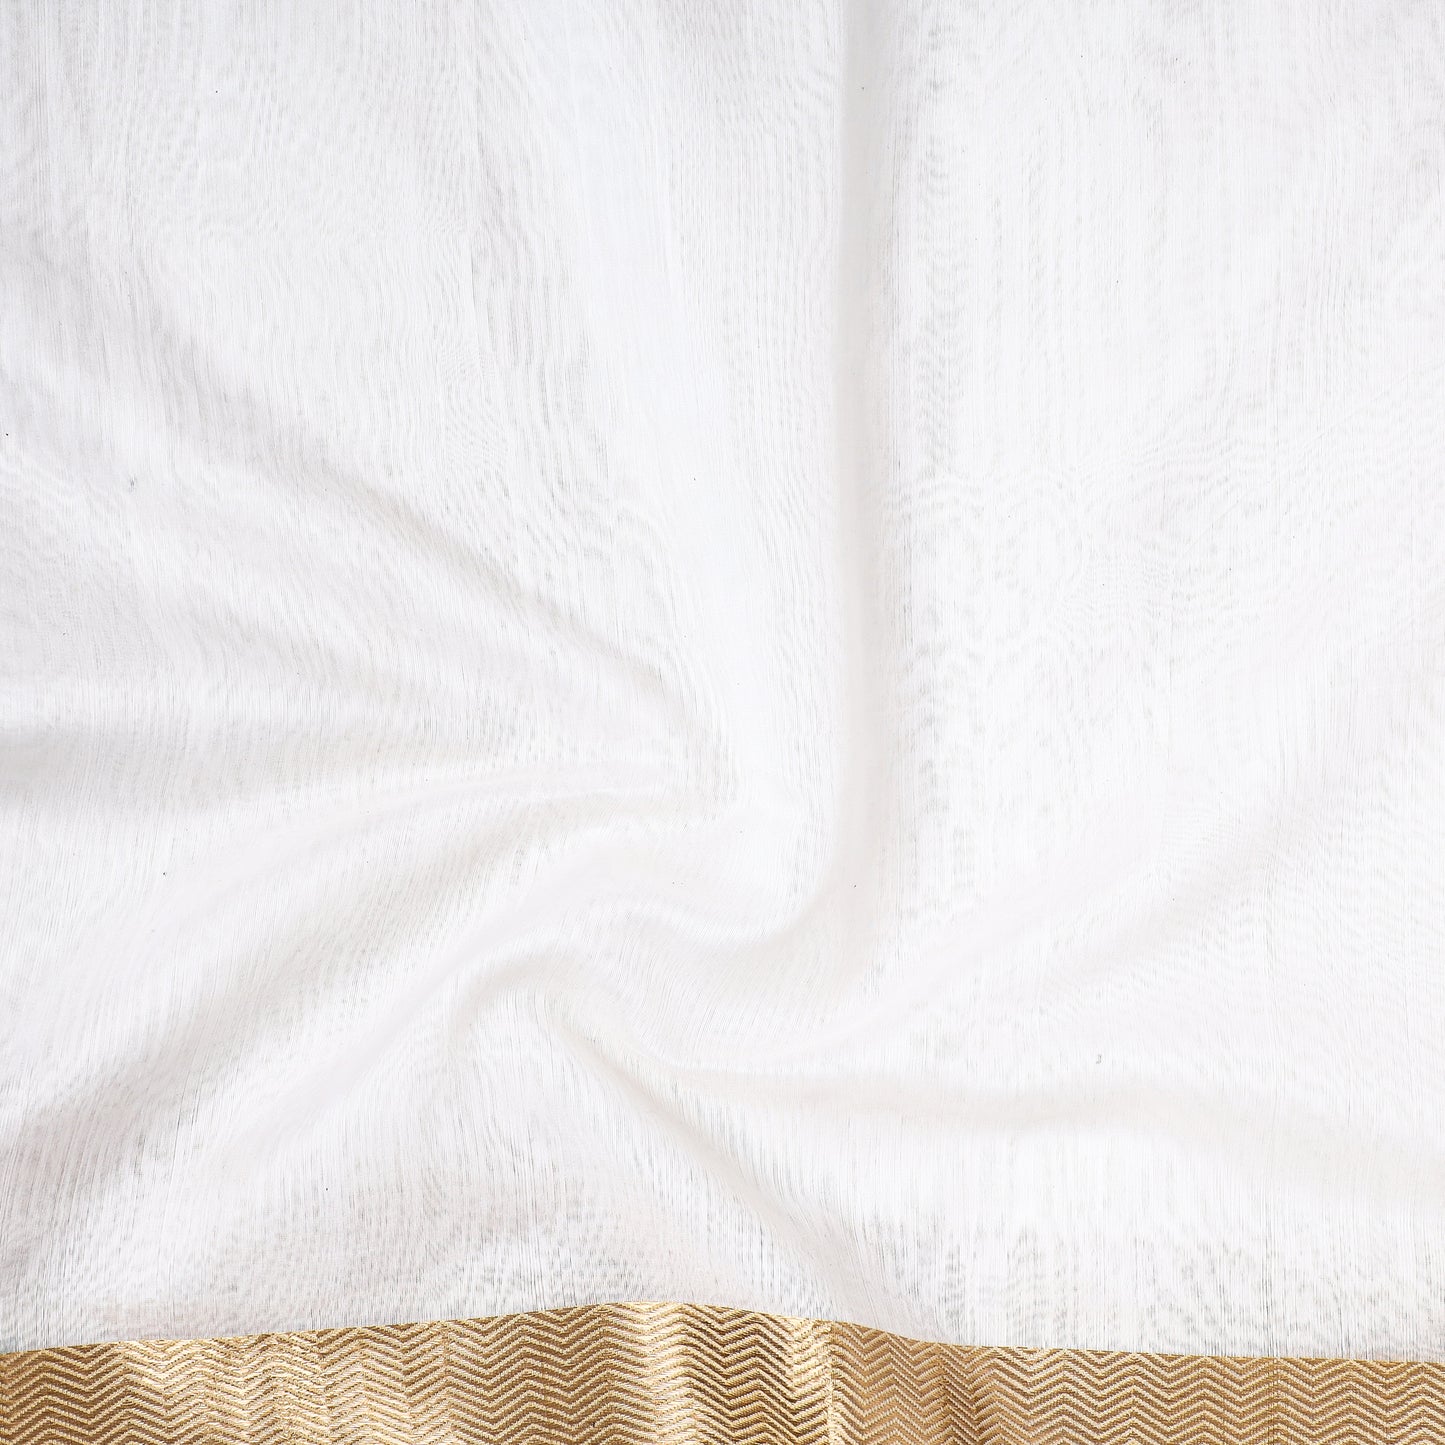 White - Traditional Maheshwari Silk Handloom Fabric with Zari Border